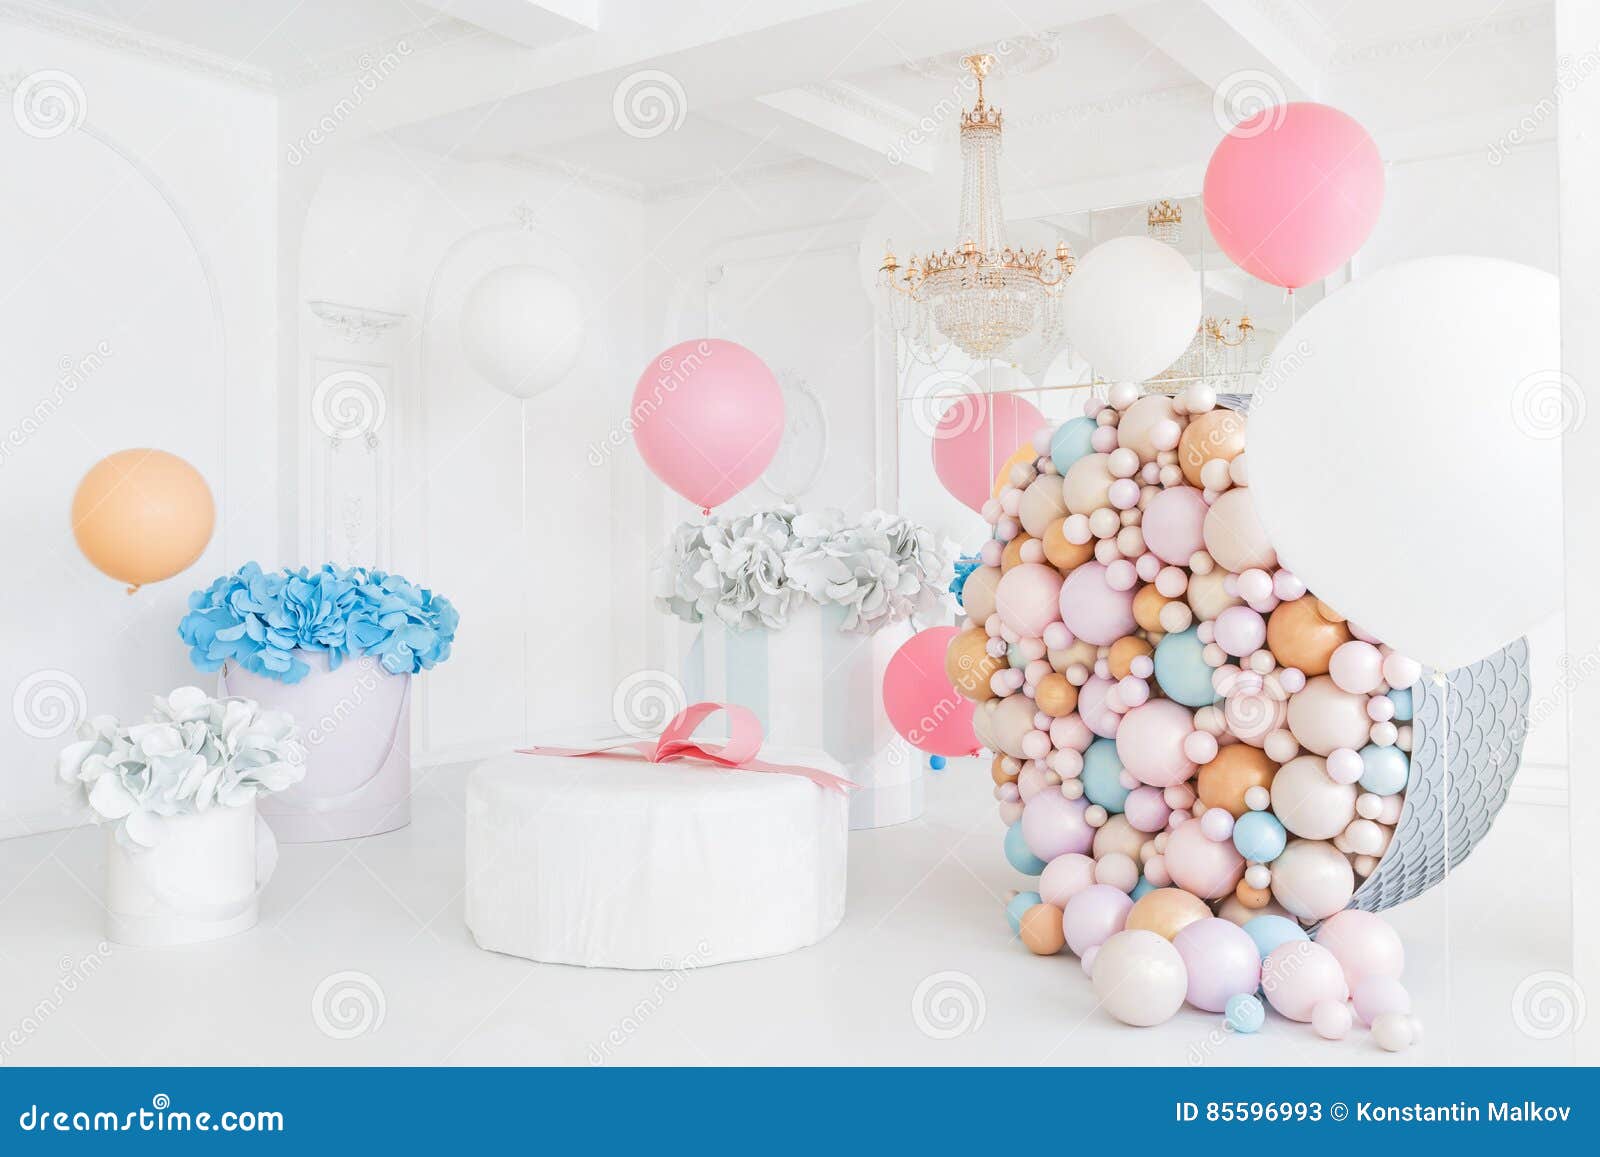 Chambre Décorée De Ballons Roses Pour Un Anniversaire, De Ballons